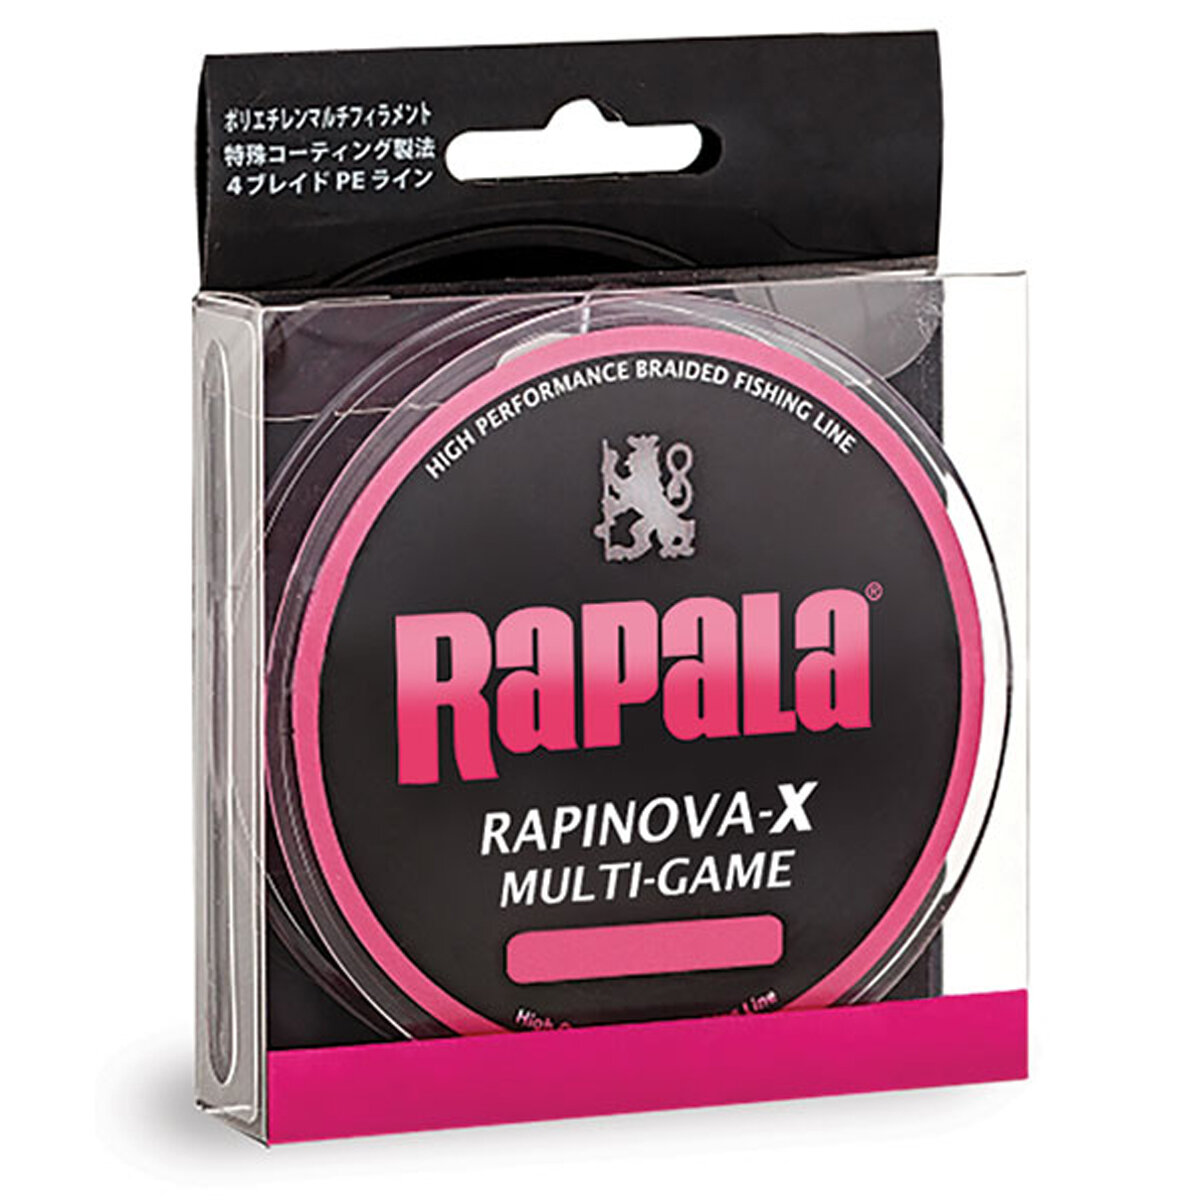 Леска плетеная RAPALA Rapinova-X MULTI GAME розовая 100м #0.4/8.8LB/0.10 мм